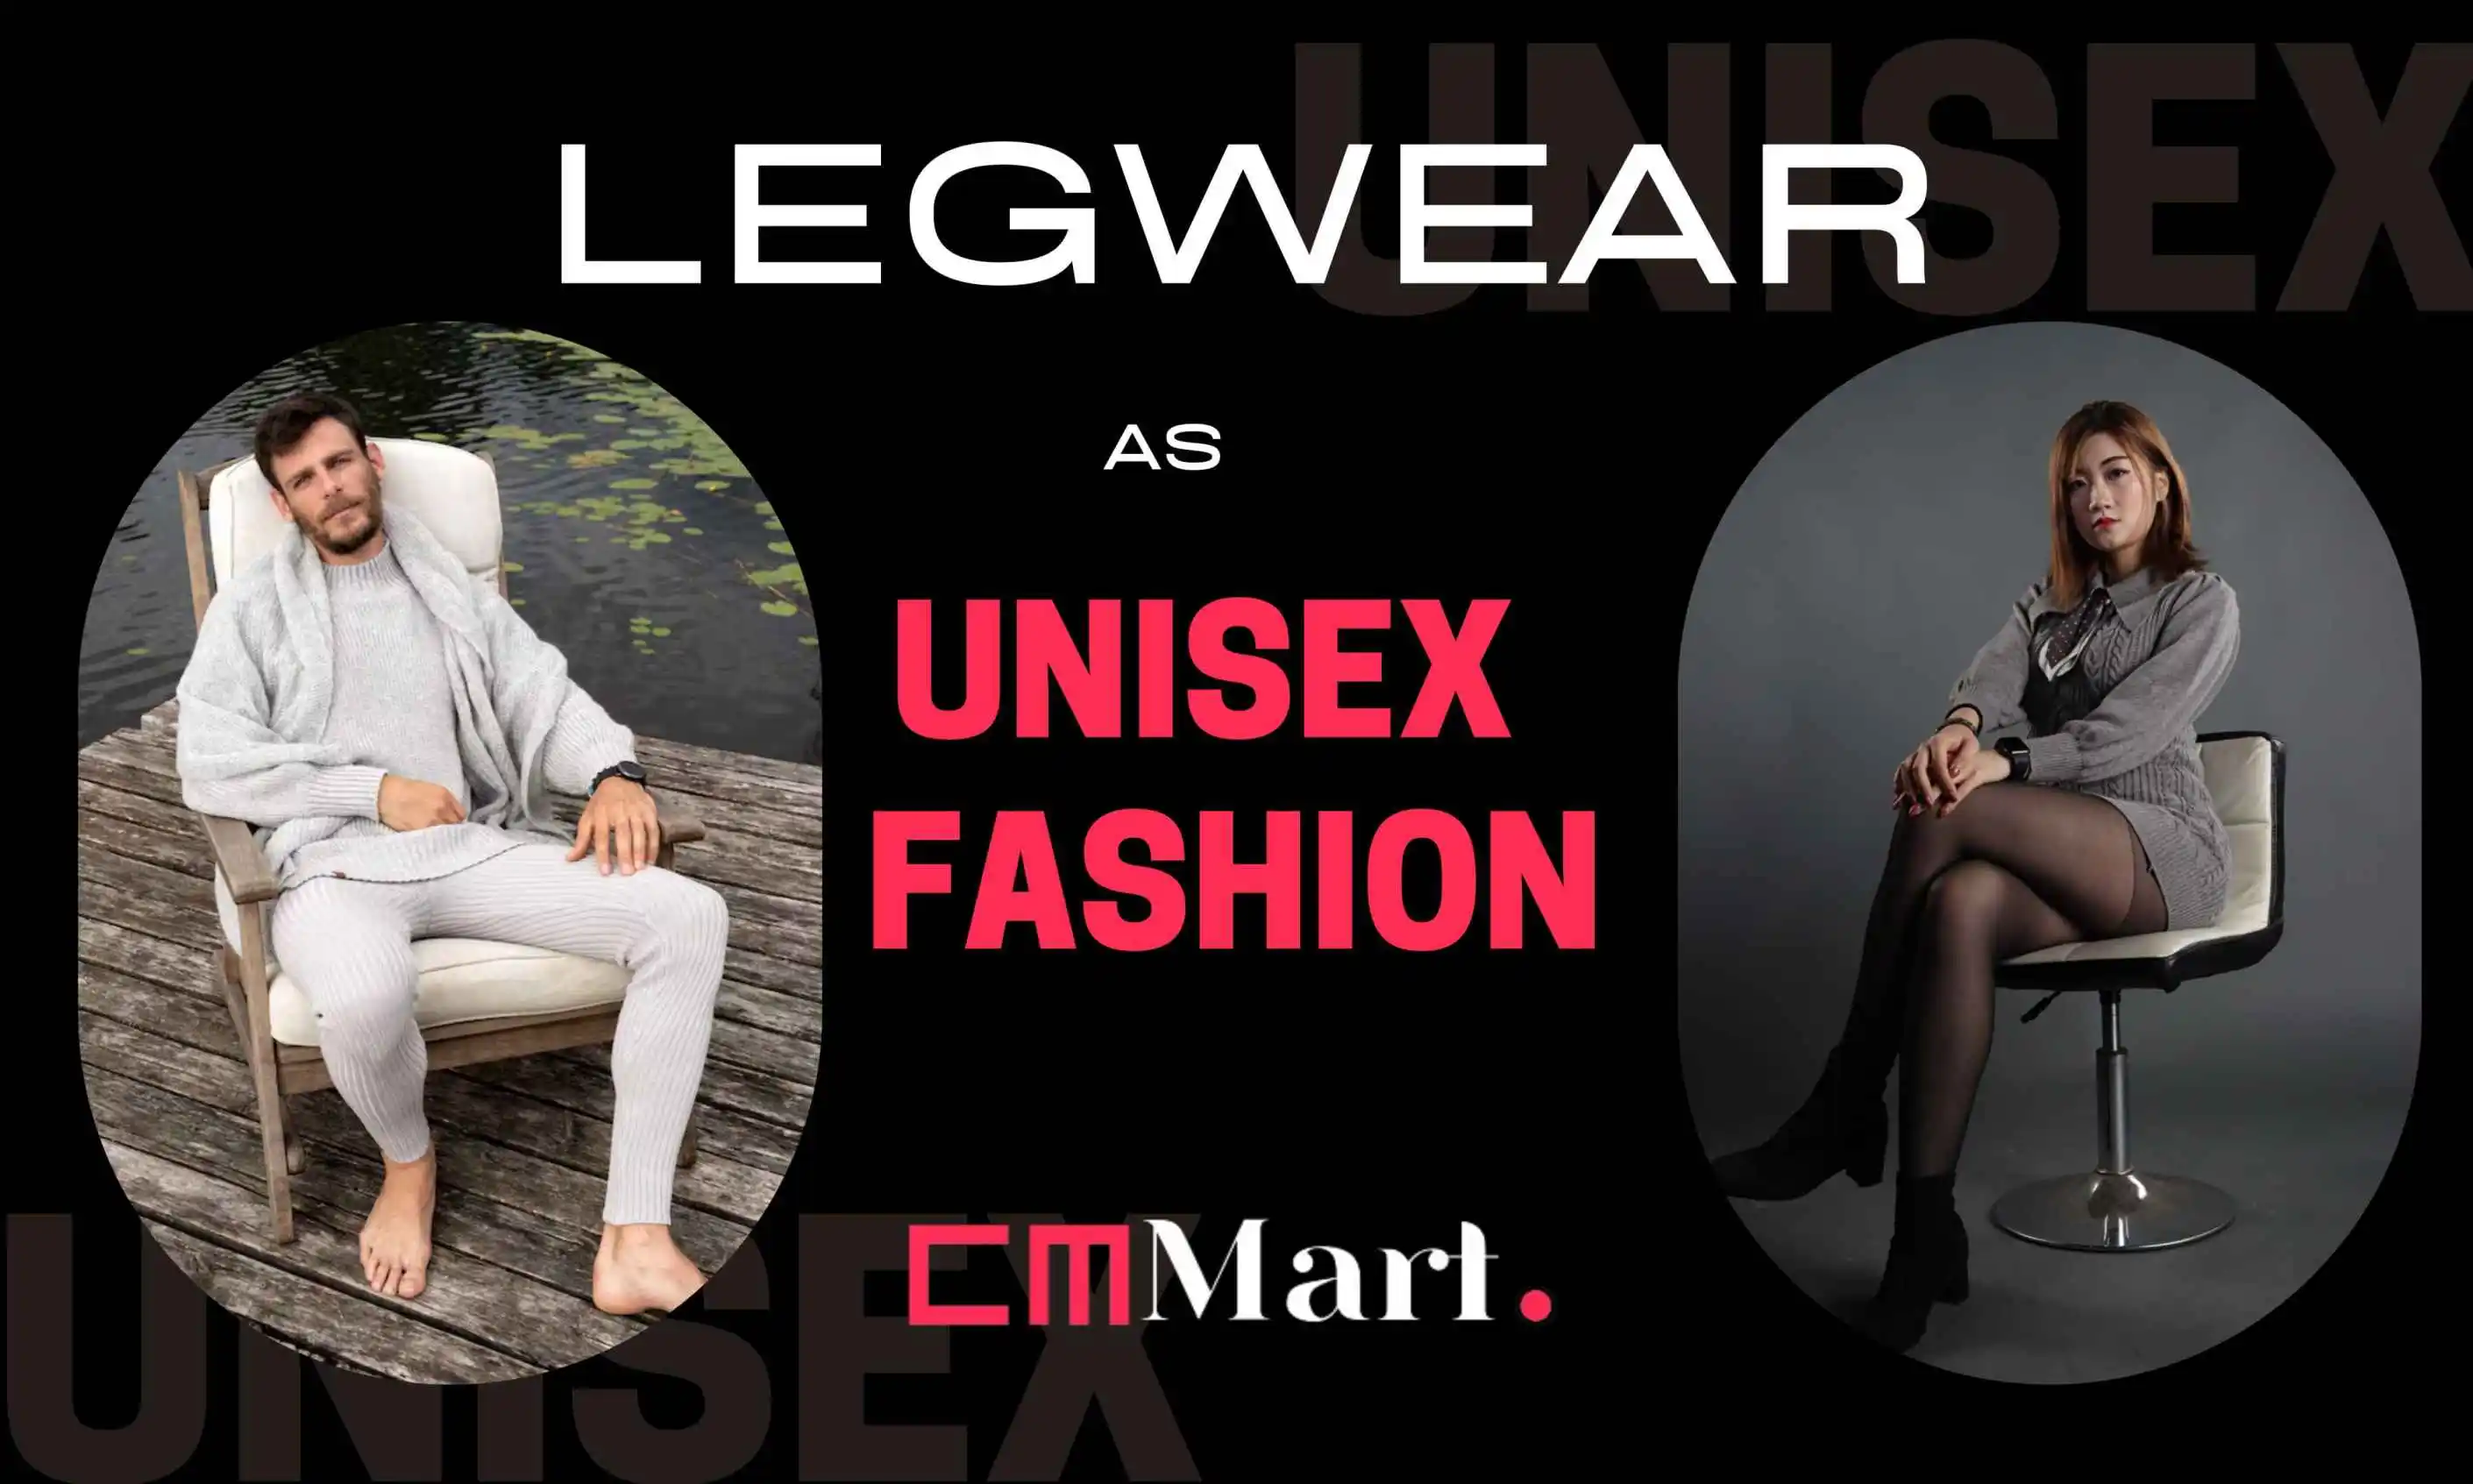 Legwear as Unisex Fashion: Redefining Wardrobe Boundaries